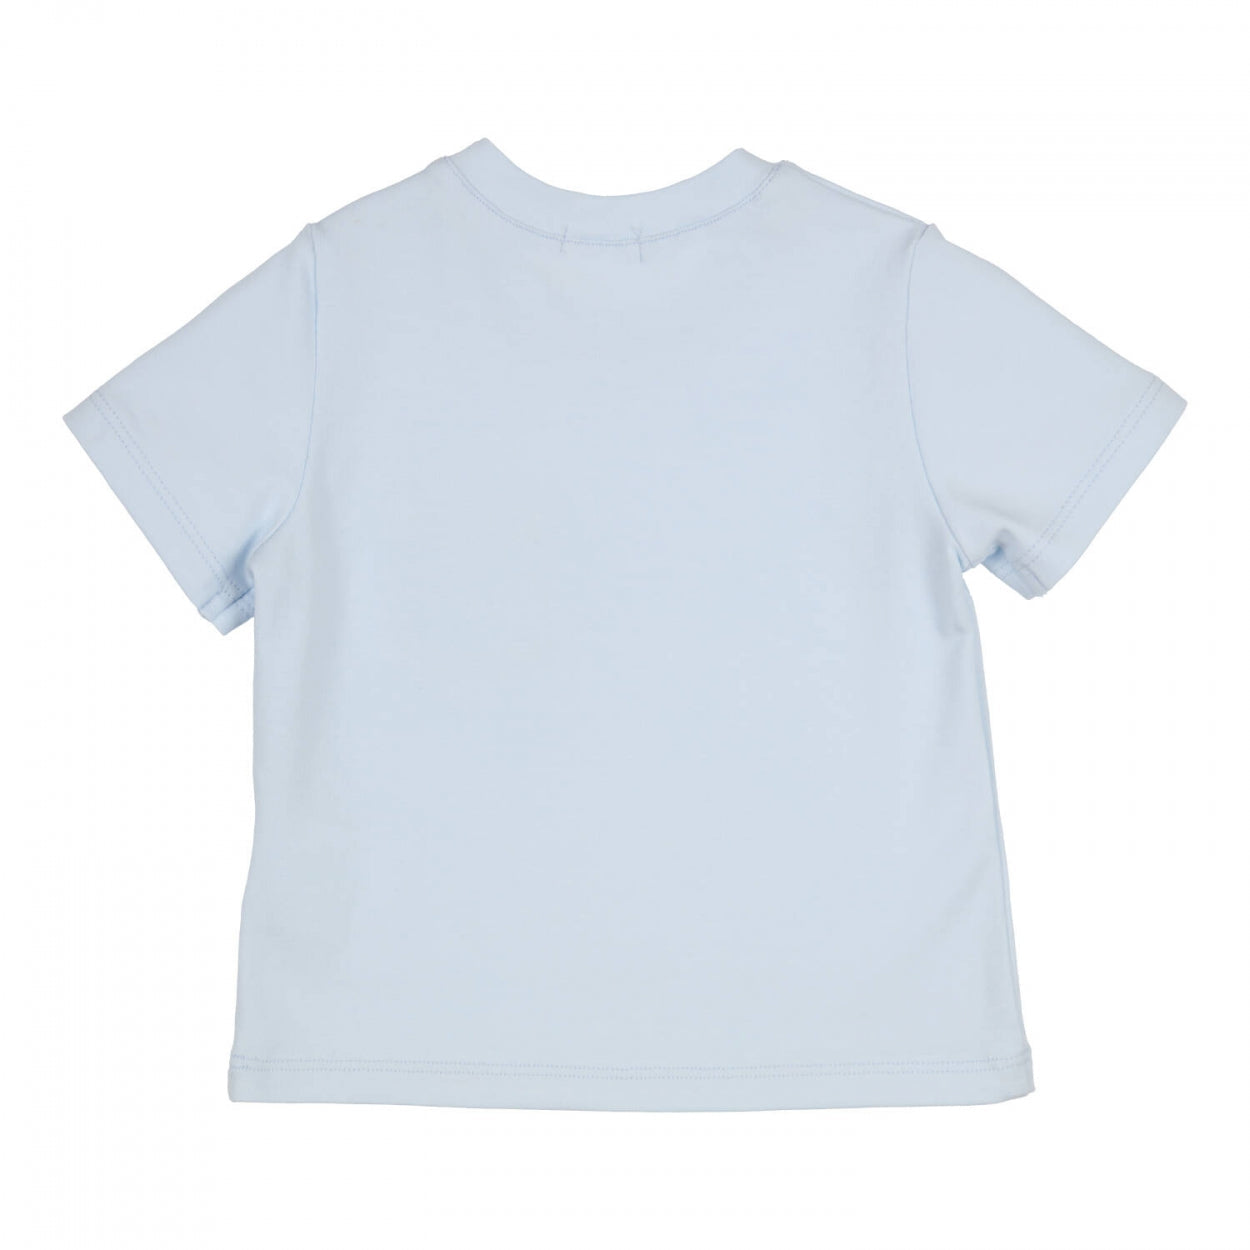 Jongens T-shirt Aerobic van Gymp in de kleur Light Blue in maat 86.